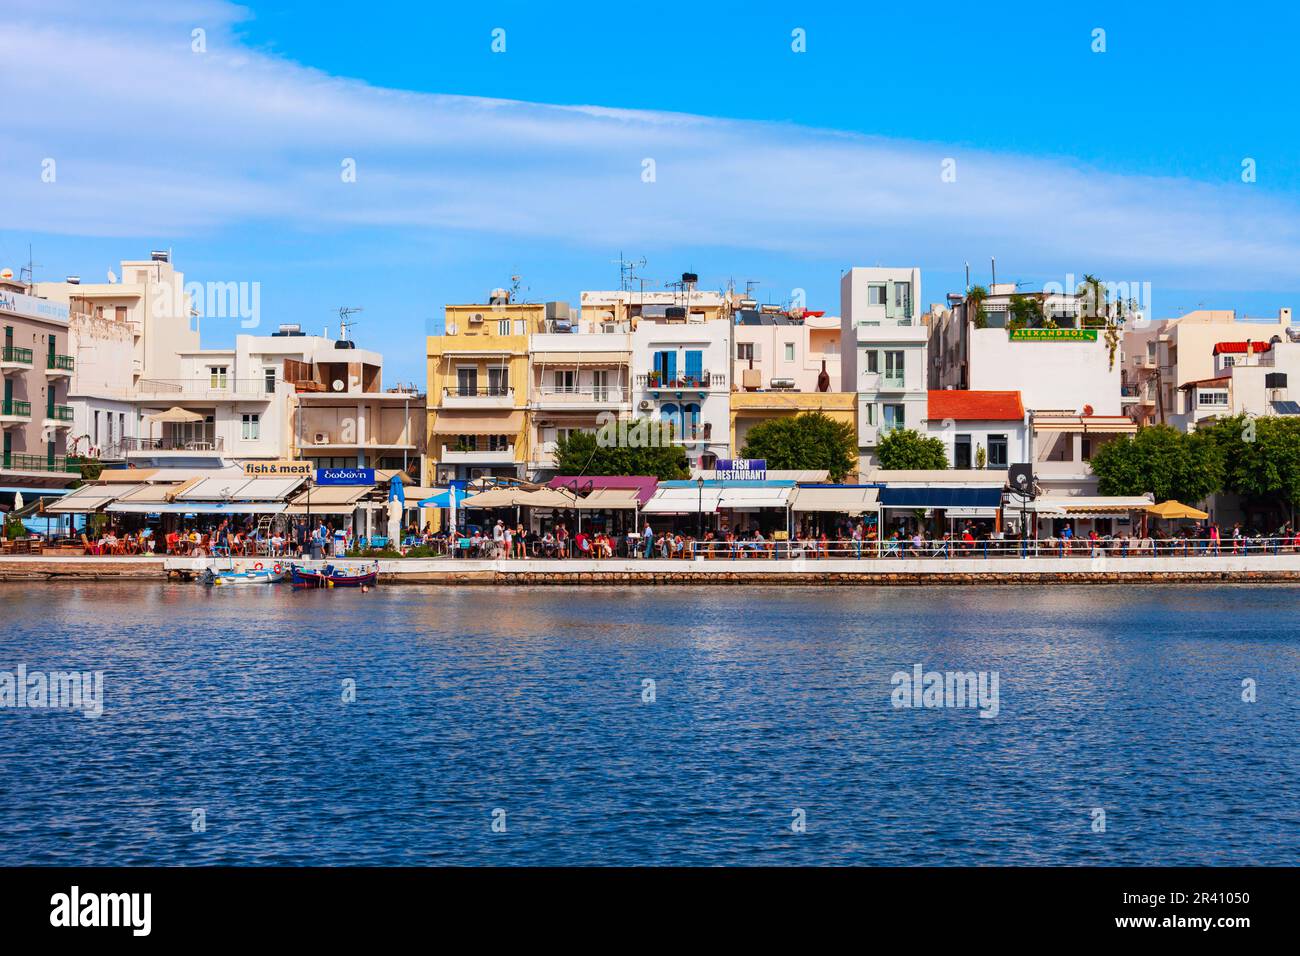 Agios Nikolaos, Grèce - 25 octobre 2021 : vue panoramique sur le port d'Agios Nikolaos. Agios, Hagios ou Aghios Nikolas est une ville côtière sur l'île de Cret Banque D'Images